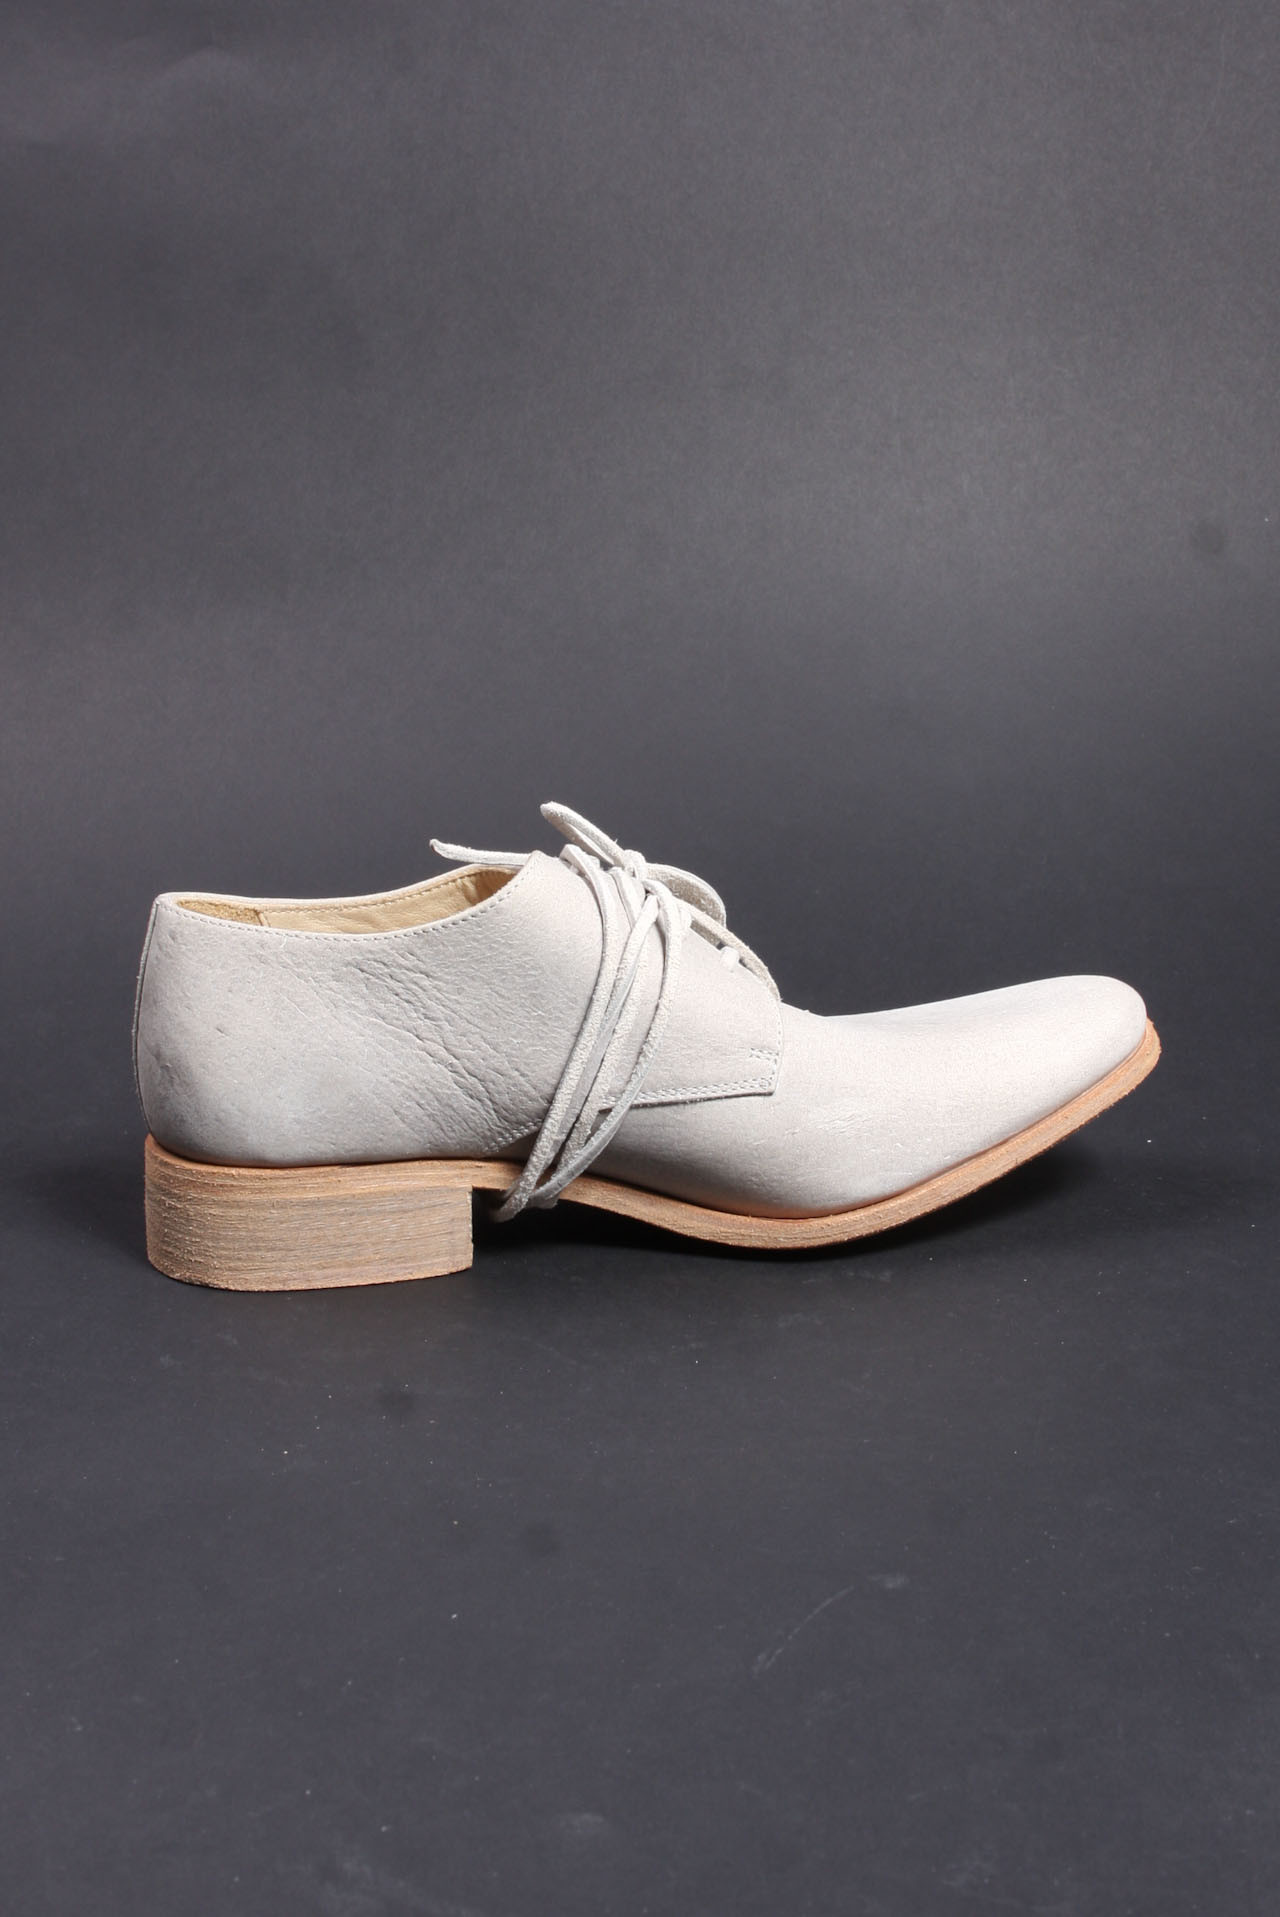 Carpe Diem Shoes - Carpe Diem Shoes for Shoes shop online